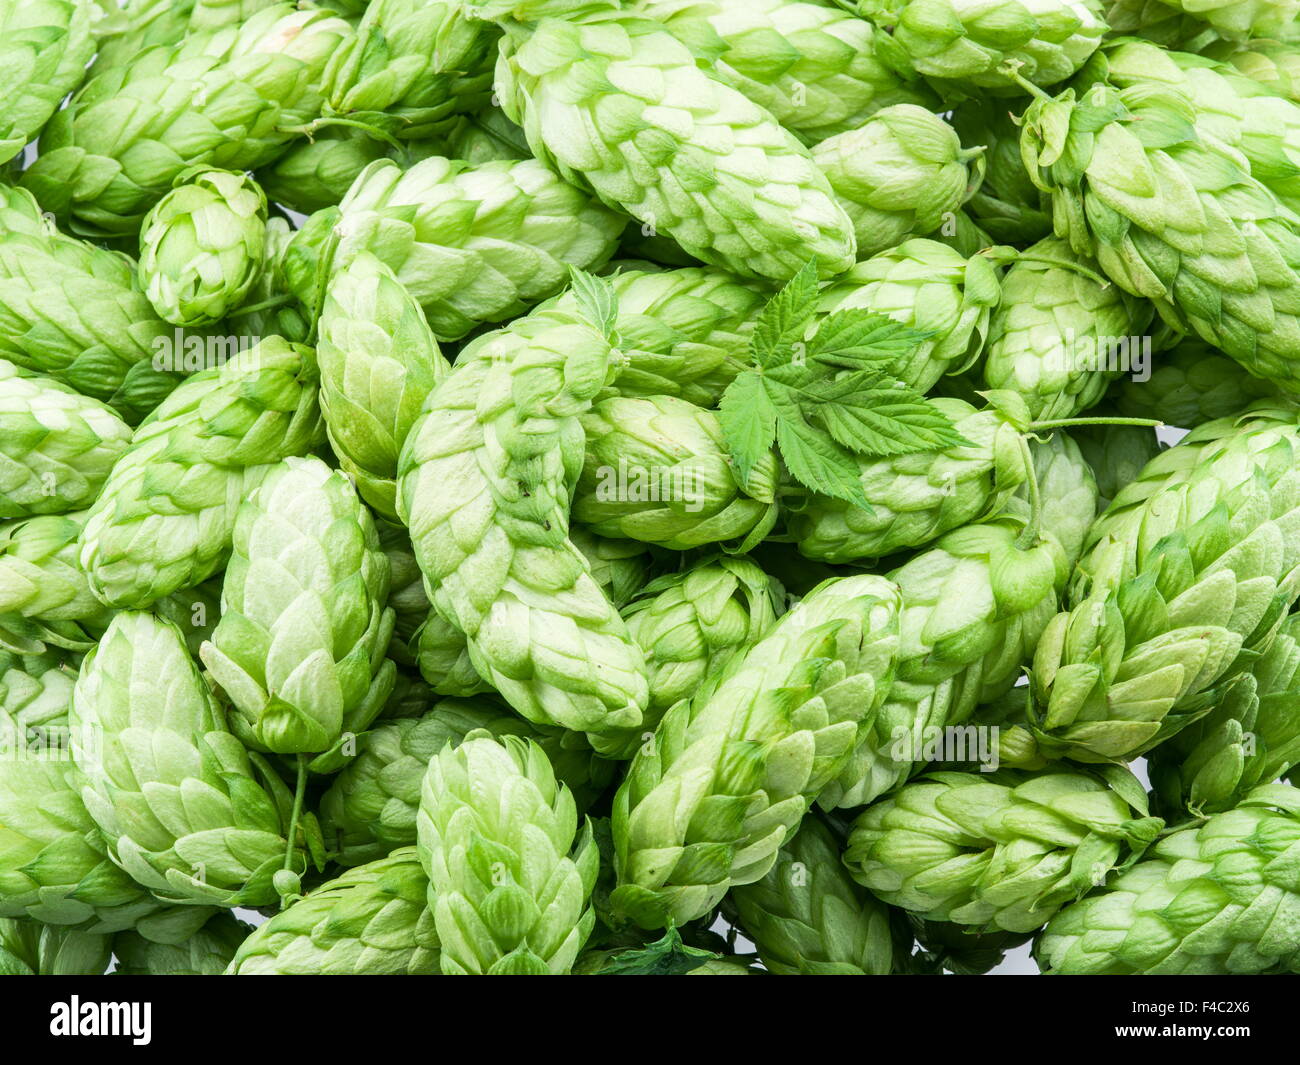 Grünen Hopfenzapfen - Zutat bei der Herstellung von Bier. Stockfoto